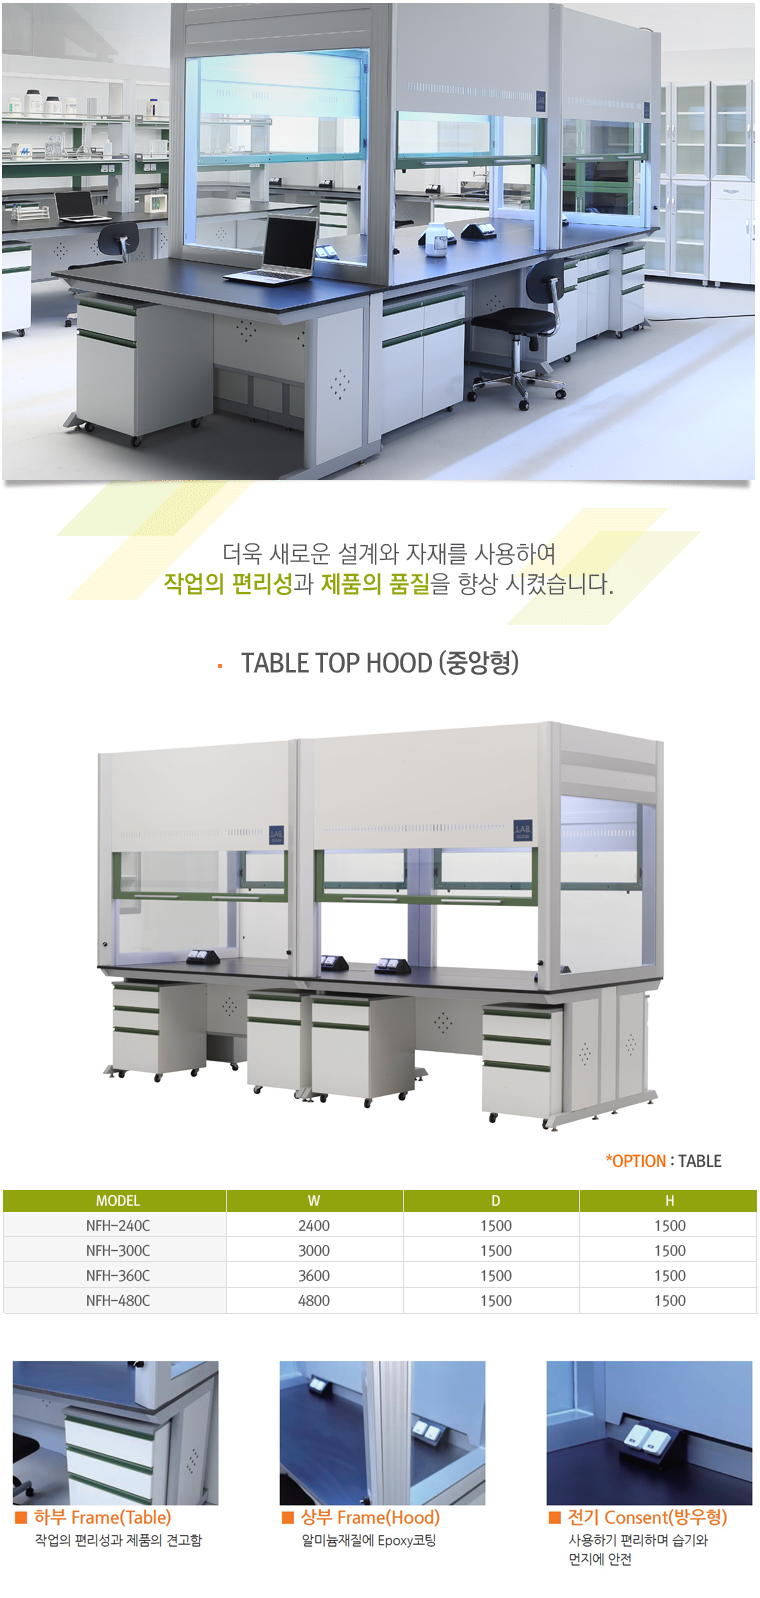 TABLE TOP HOOD (중앙형)